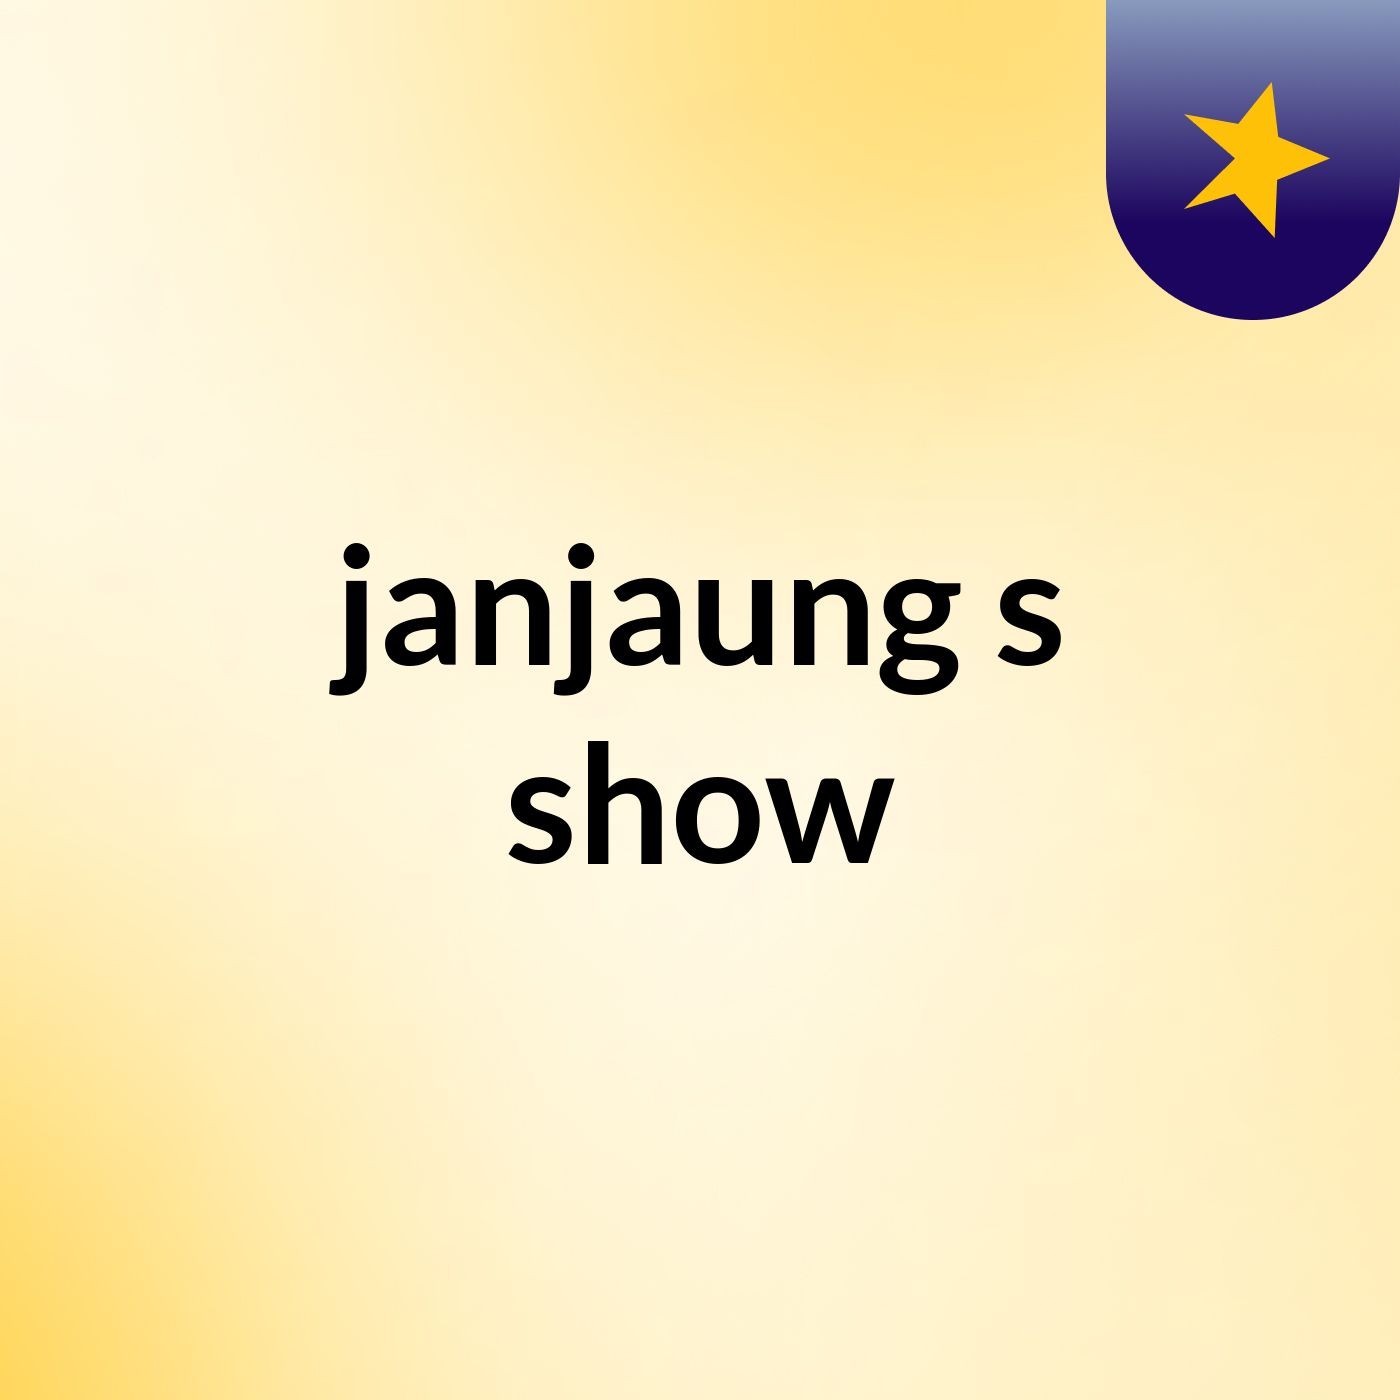 janjaung's show